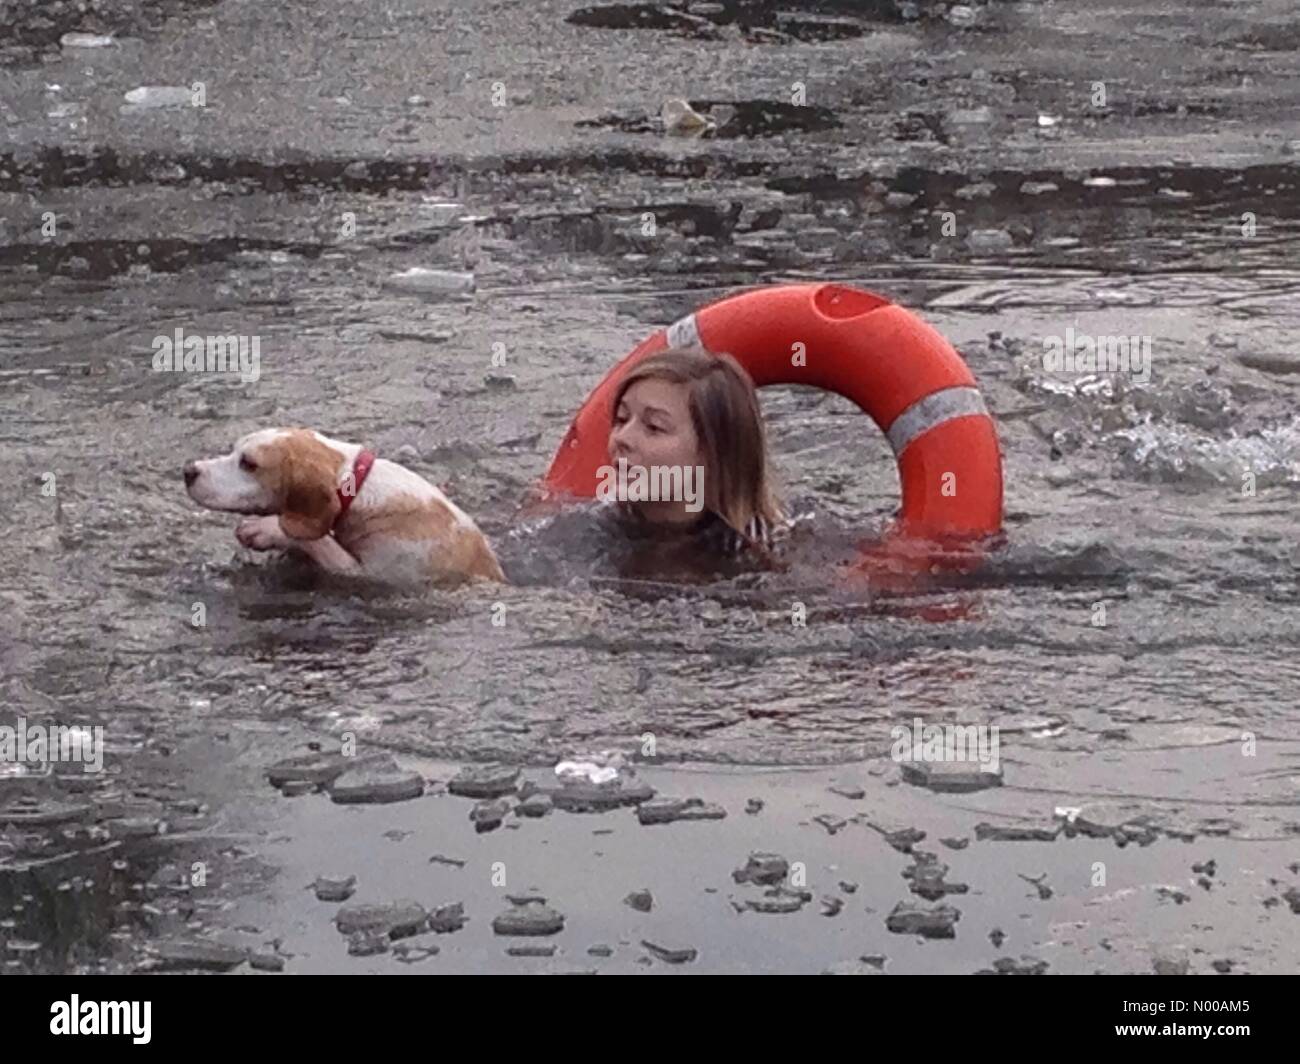 Alexandra Palace, London, UK. 23rd Jan, 2017. Woman saves dog from frozen boating lake at Alexandra Palace, North London. Credit: Robert Christopher / StockimoNews/Alamy Live News Stock Photo